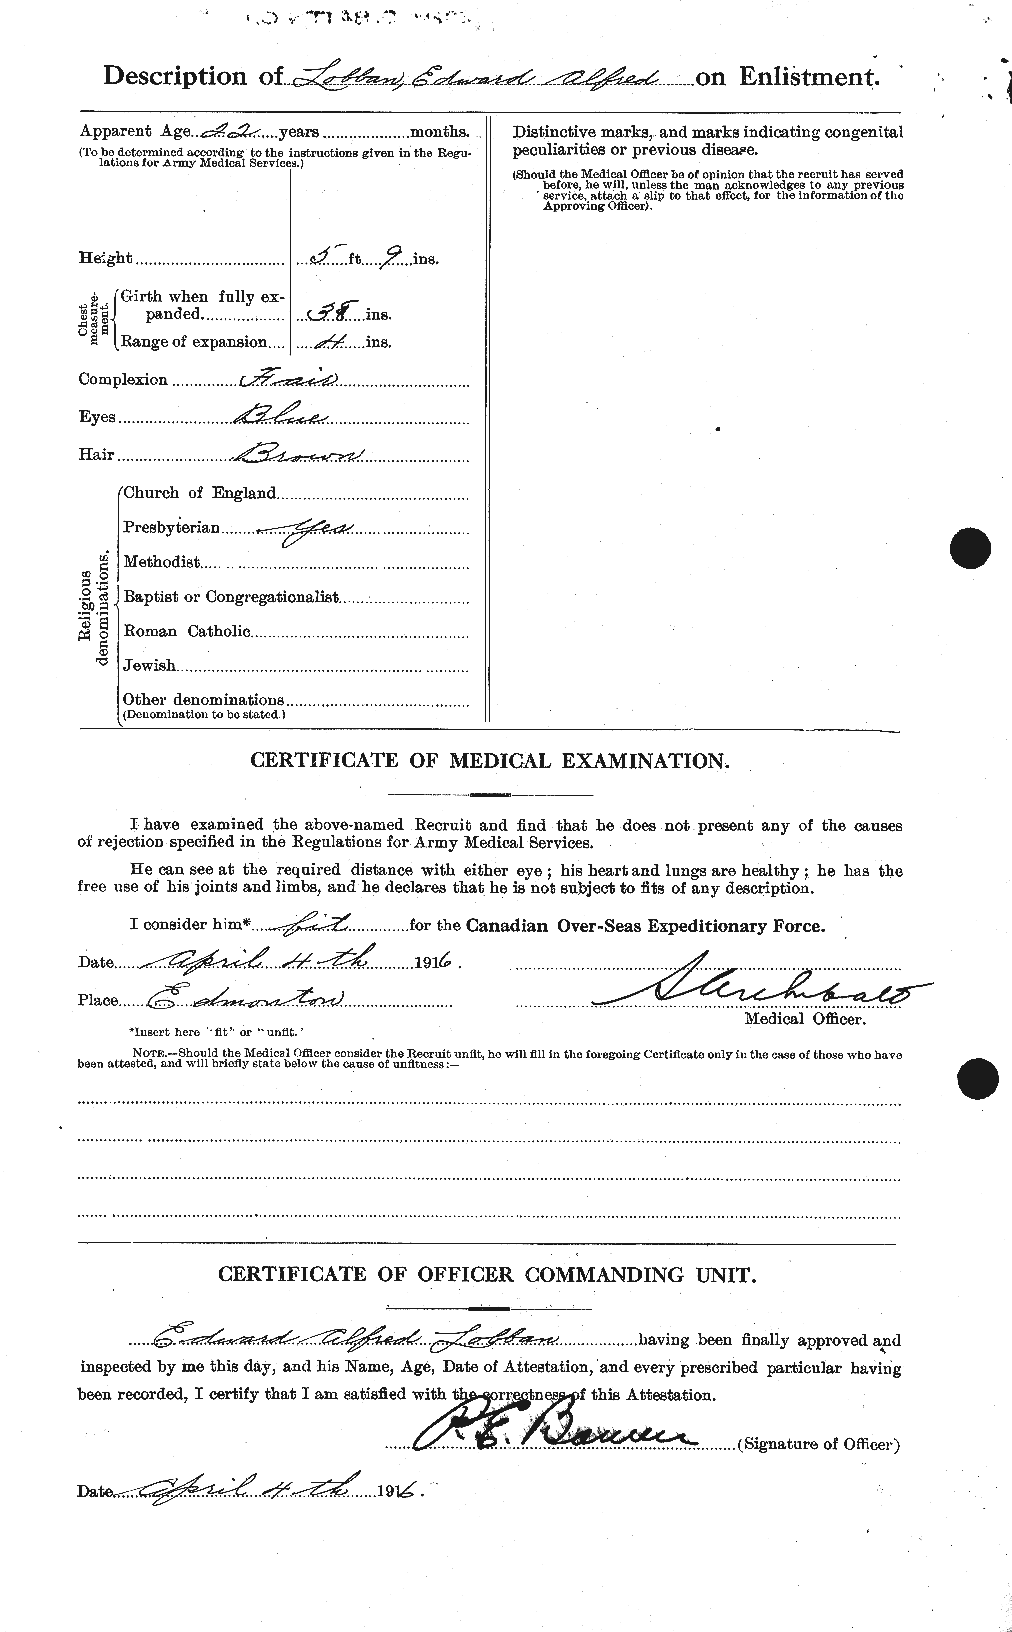 Dossiers du Personnel de la Première Guerre mondiale - CEC 472074b